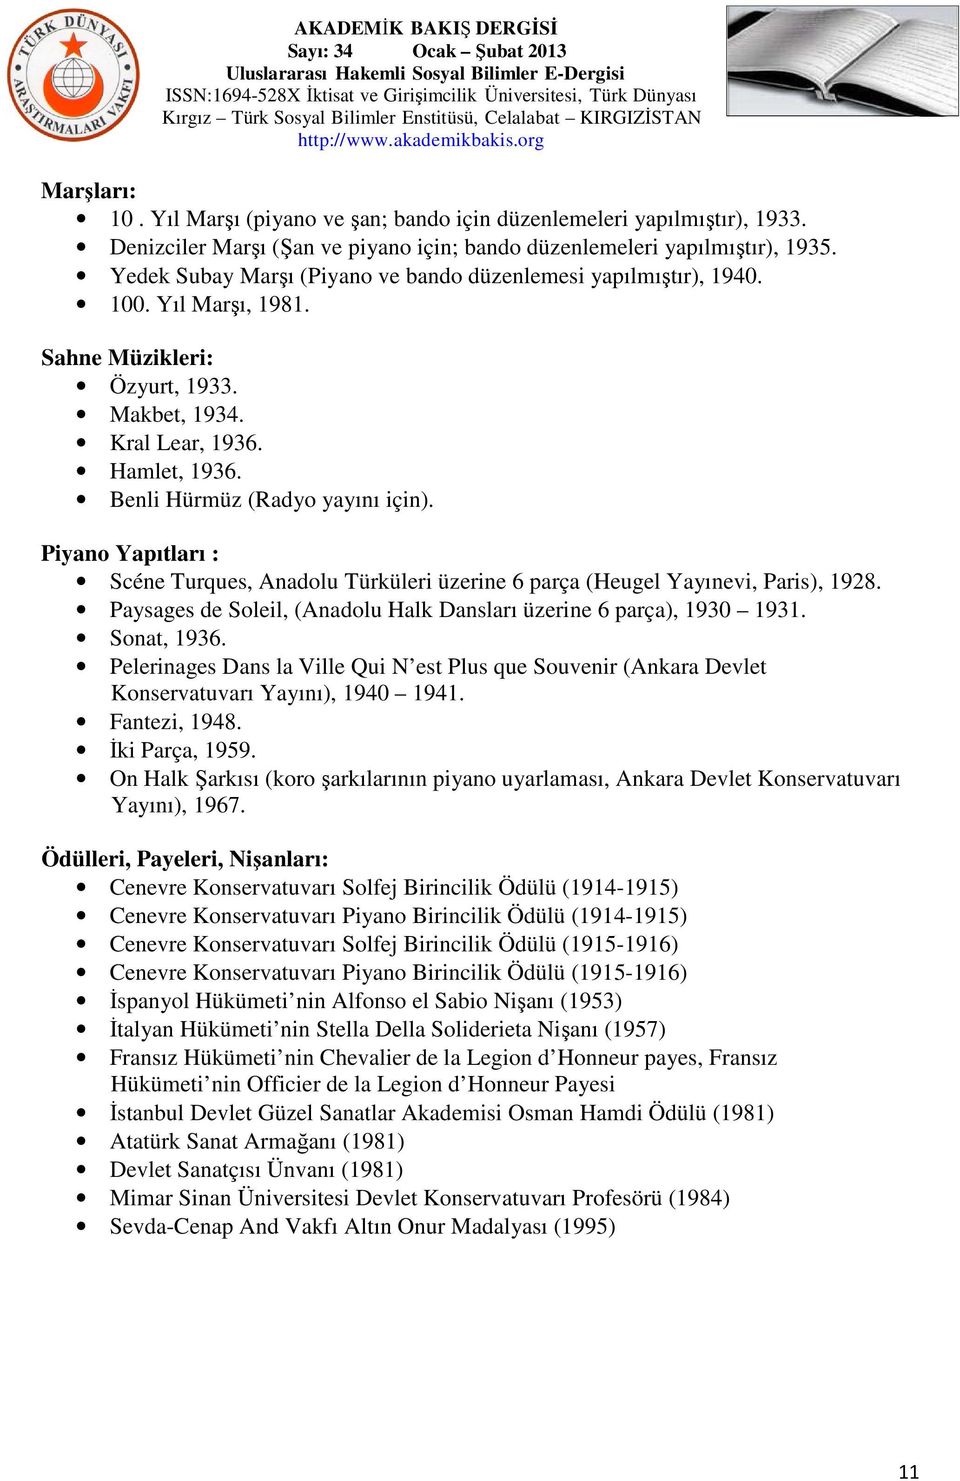 Piyano Yapıtları : Scéne Turques, Anadolu Türküleri üzerine 6 parça (Heugel Yayınevi, Paris), 1928. Paysages de Soleil, (Anadolu Halk Dansları üzerine 6 parça), 1930 1931. Sonat, 1936.